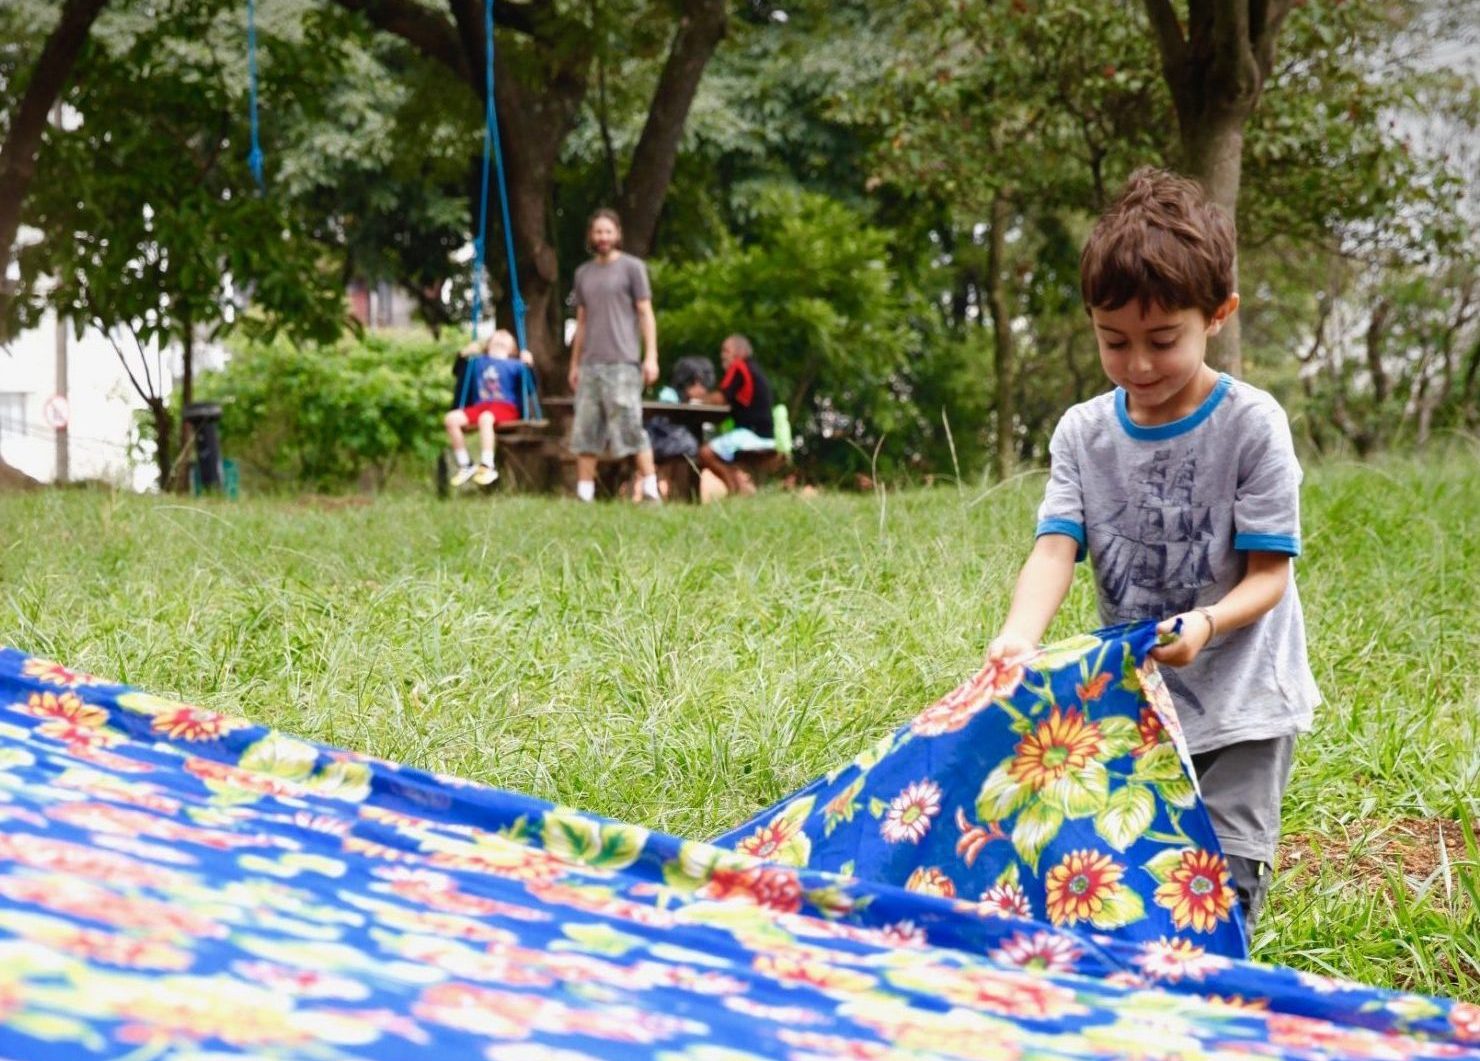 Criança estendendo uma toalha de piquenique na grama.